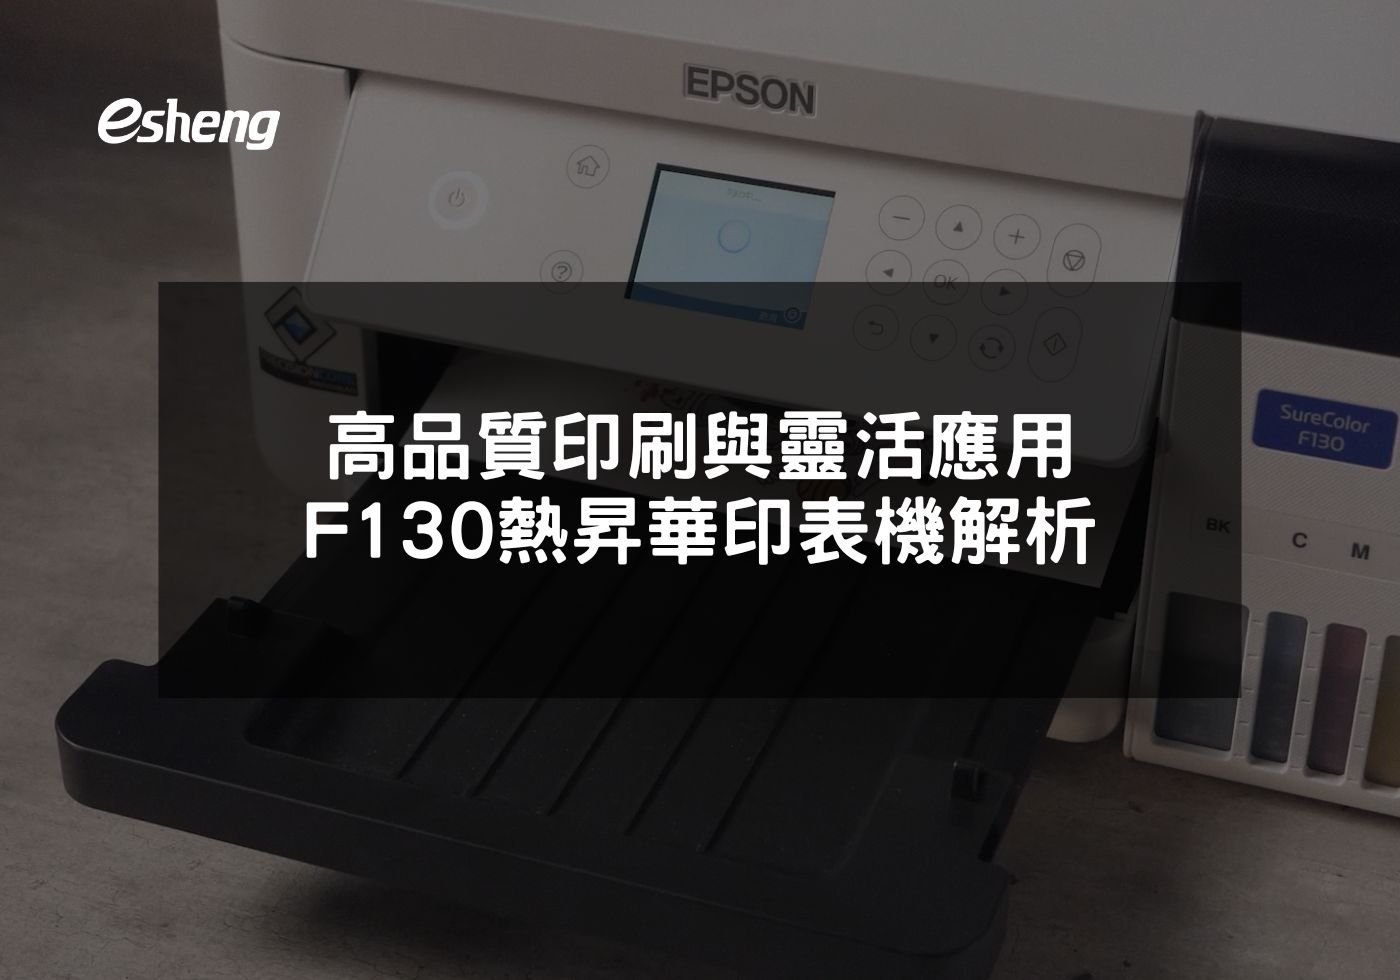 閱讀更多文章 高品質印刷與靈活應用 EPSON F130 熱昇華印表機解析